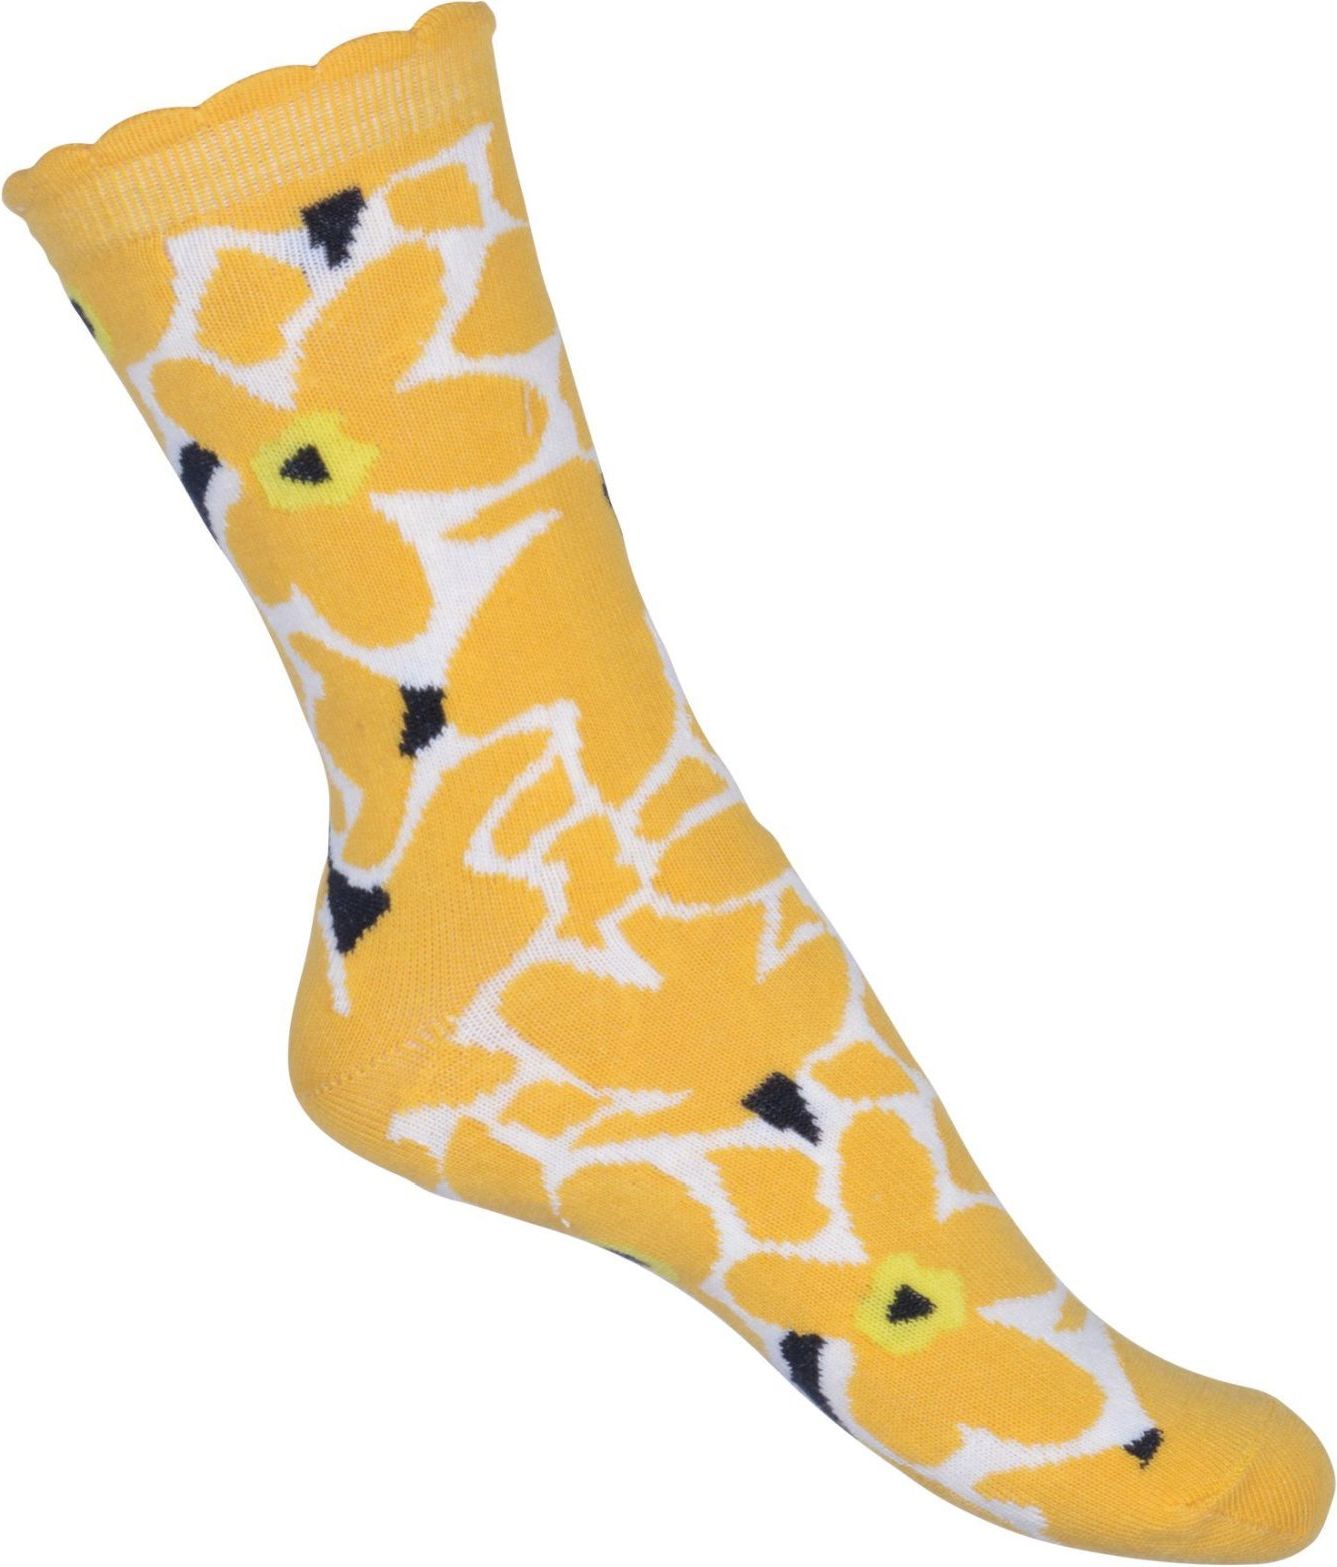 Melton Sock - Big Flower - yolk yellow 27-30 - obrázek 1